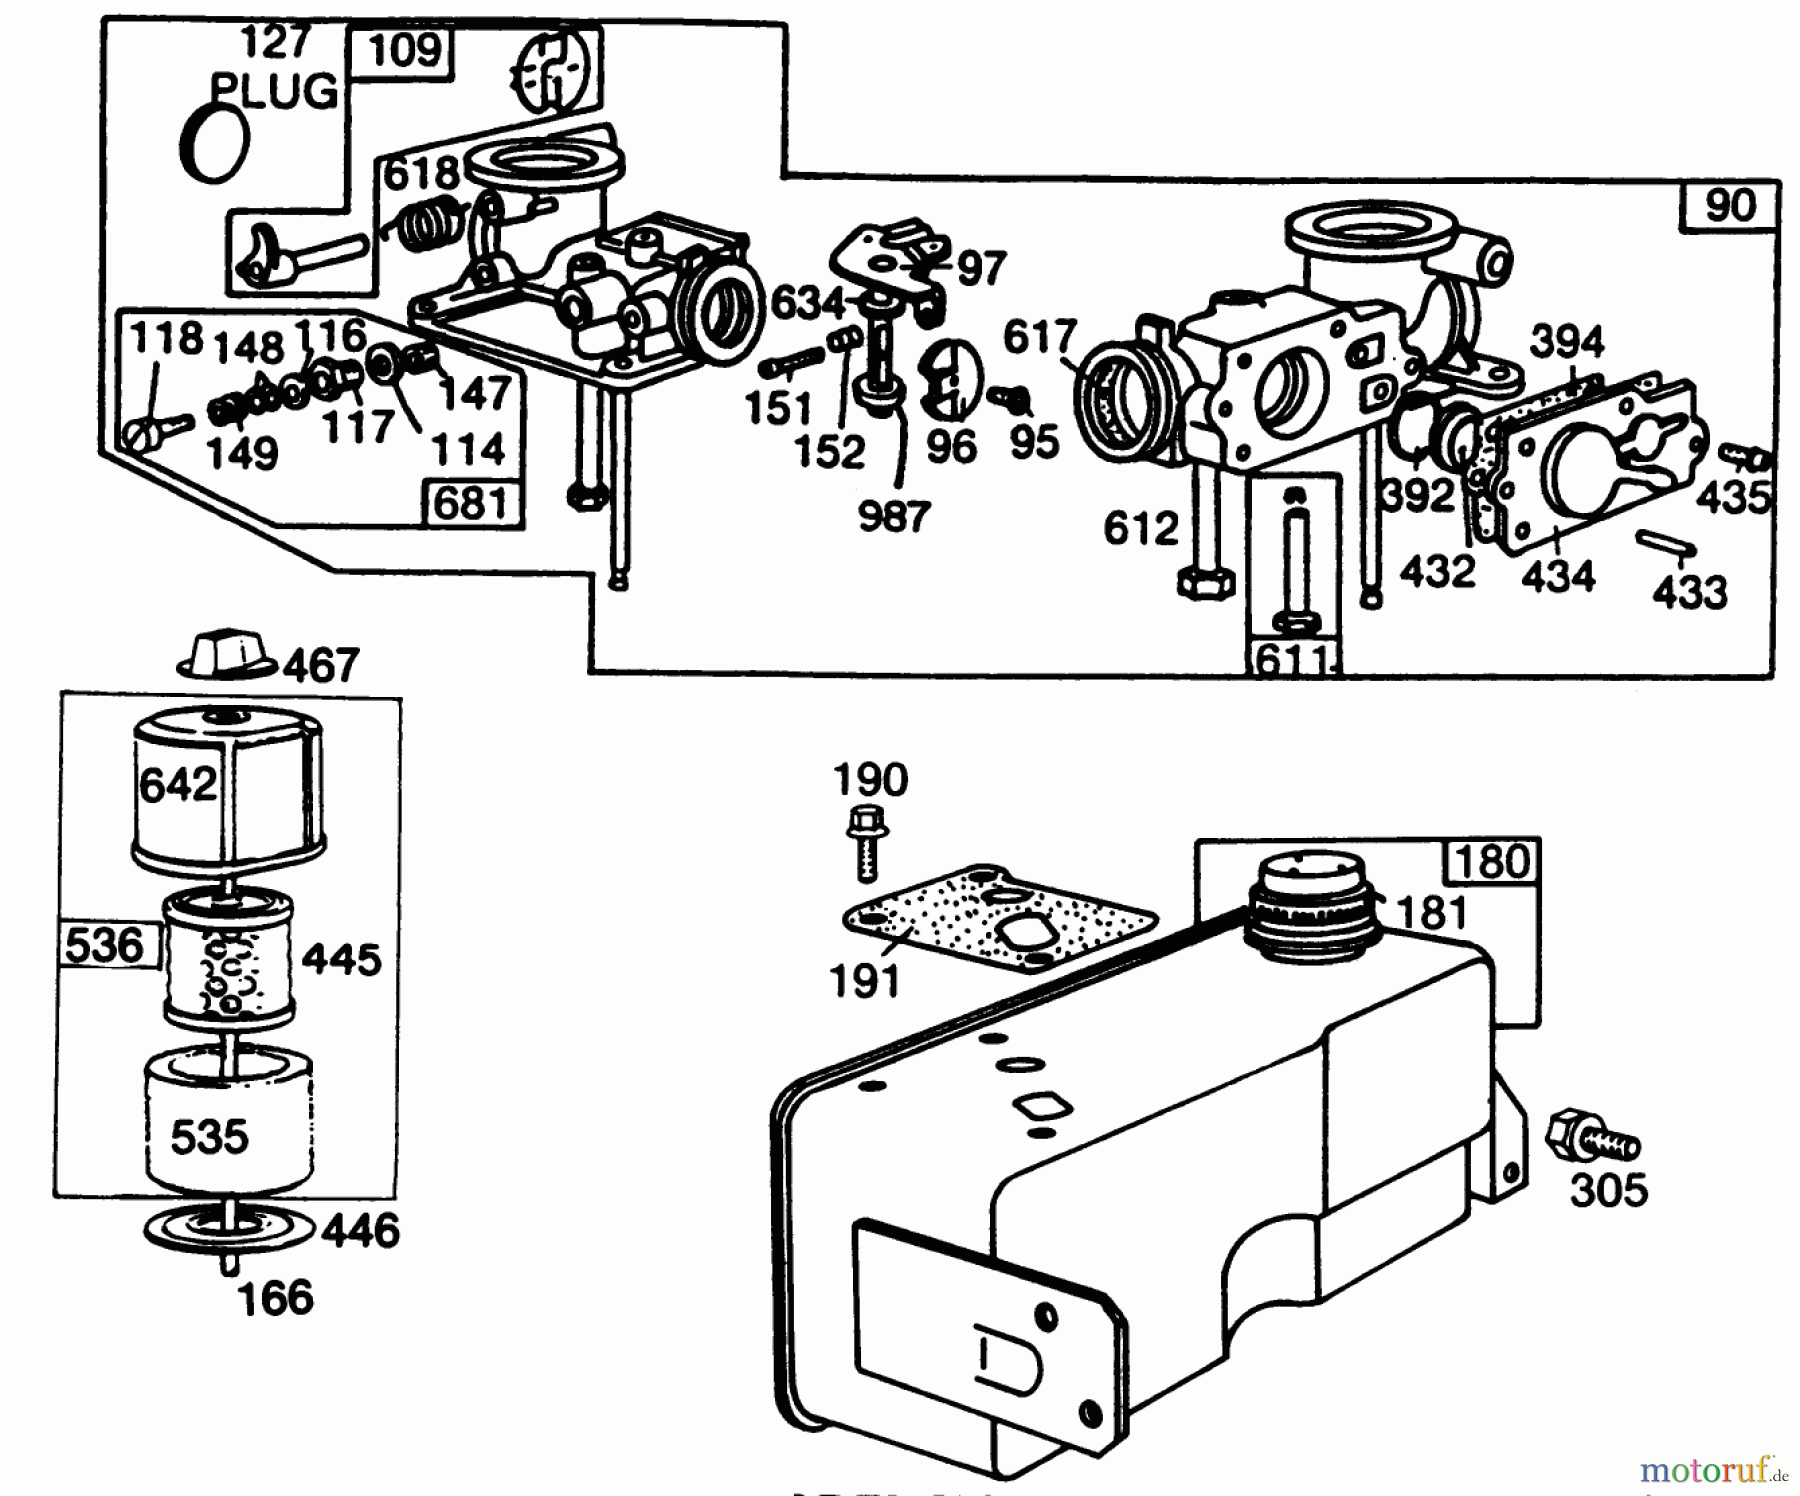  Toro Neu Mowers, Walk-Behind Seite 2 22005 - Toro Lawnmower, 1987 (7000001-7999999) ENGINE BRIGGS & STRATTON MODEL NO. 130902 TYPE 1200-01 #3